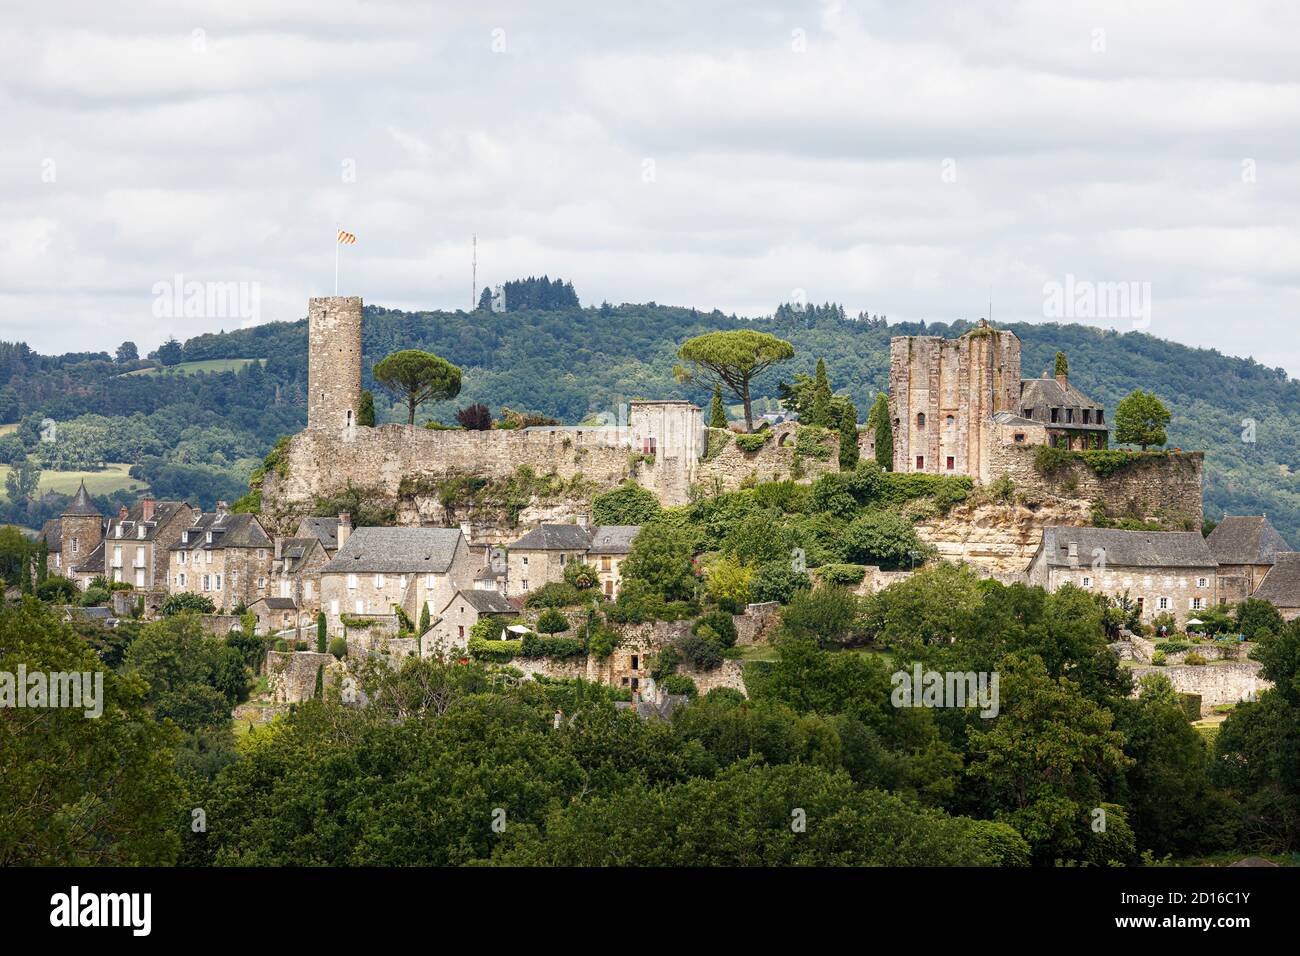 France, Correze, Turenne, labelled Les Plus Beaux Villages de France (The Most beautiful Villages of France), the village and the castle Stock Photo